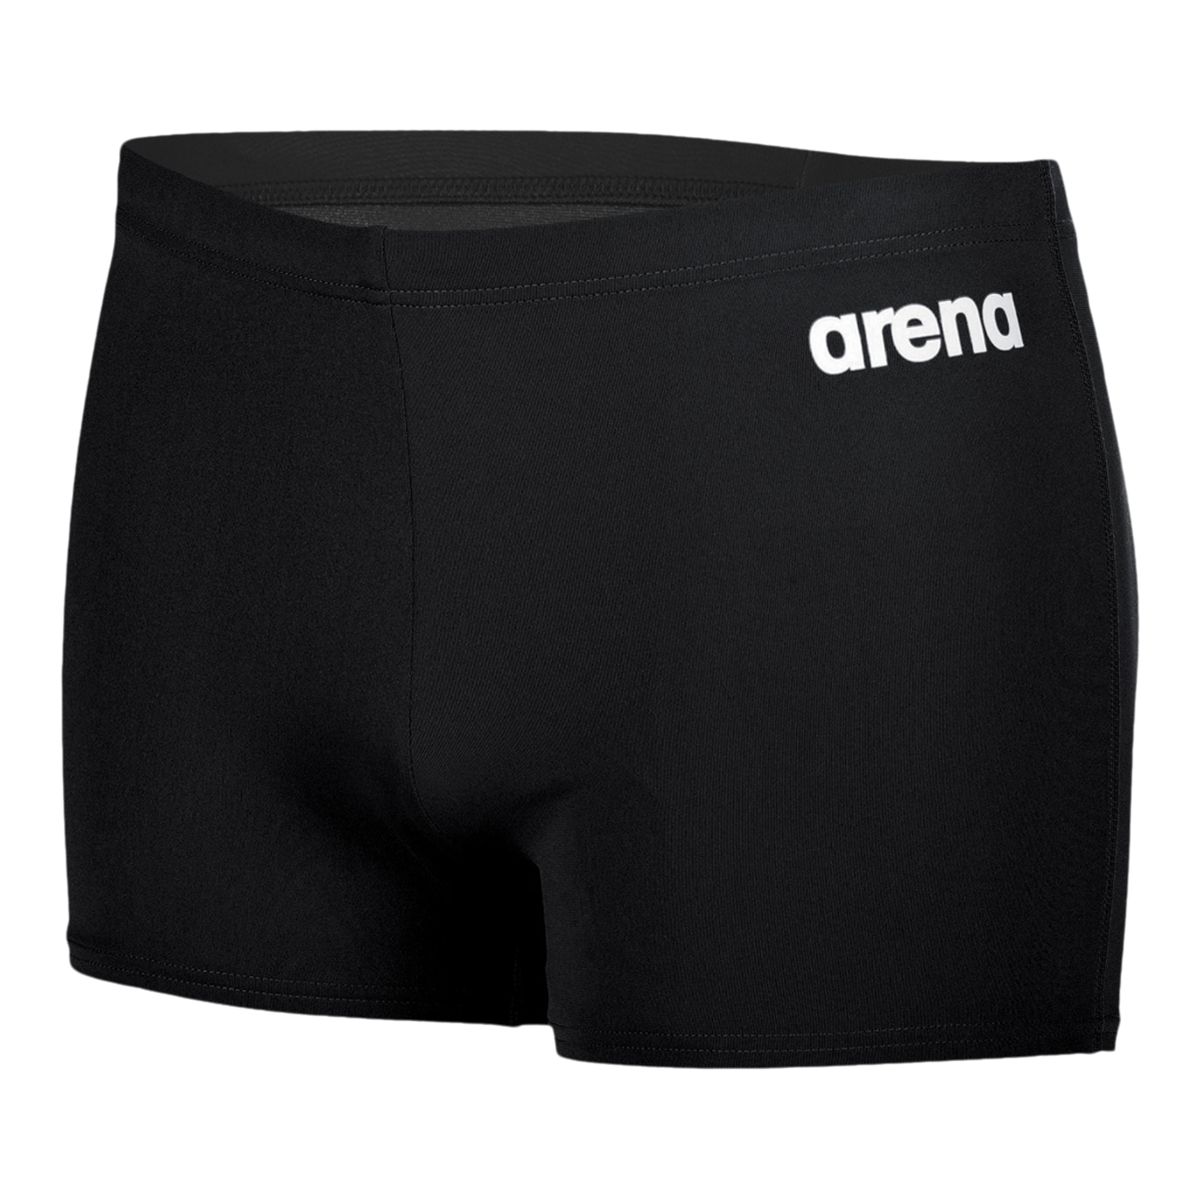 Image of Arena Men's Team Swim Solid Shorts